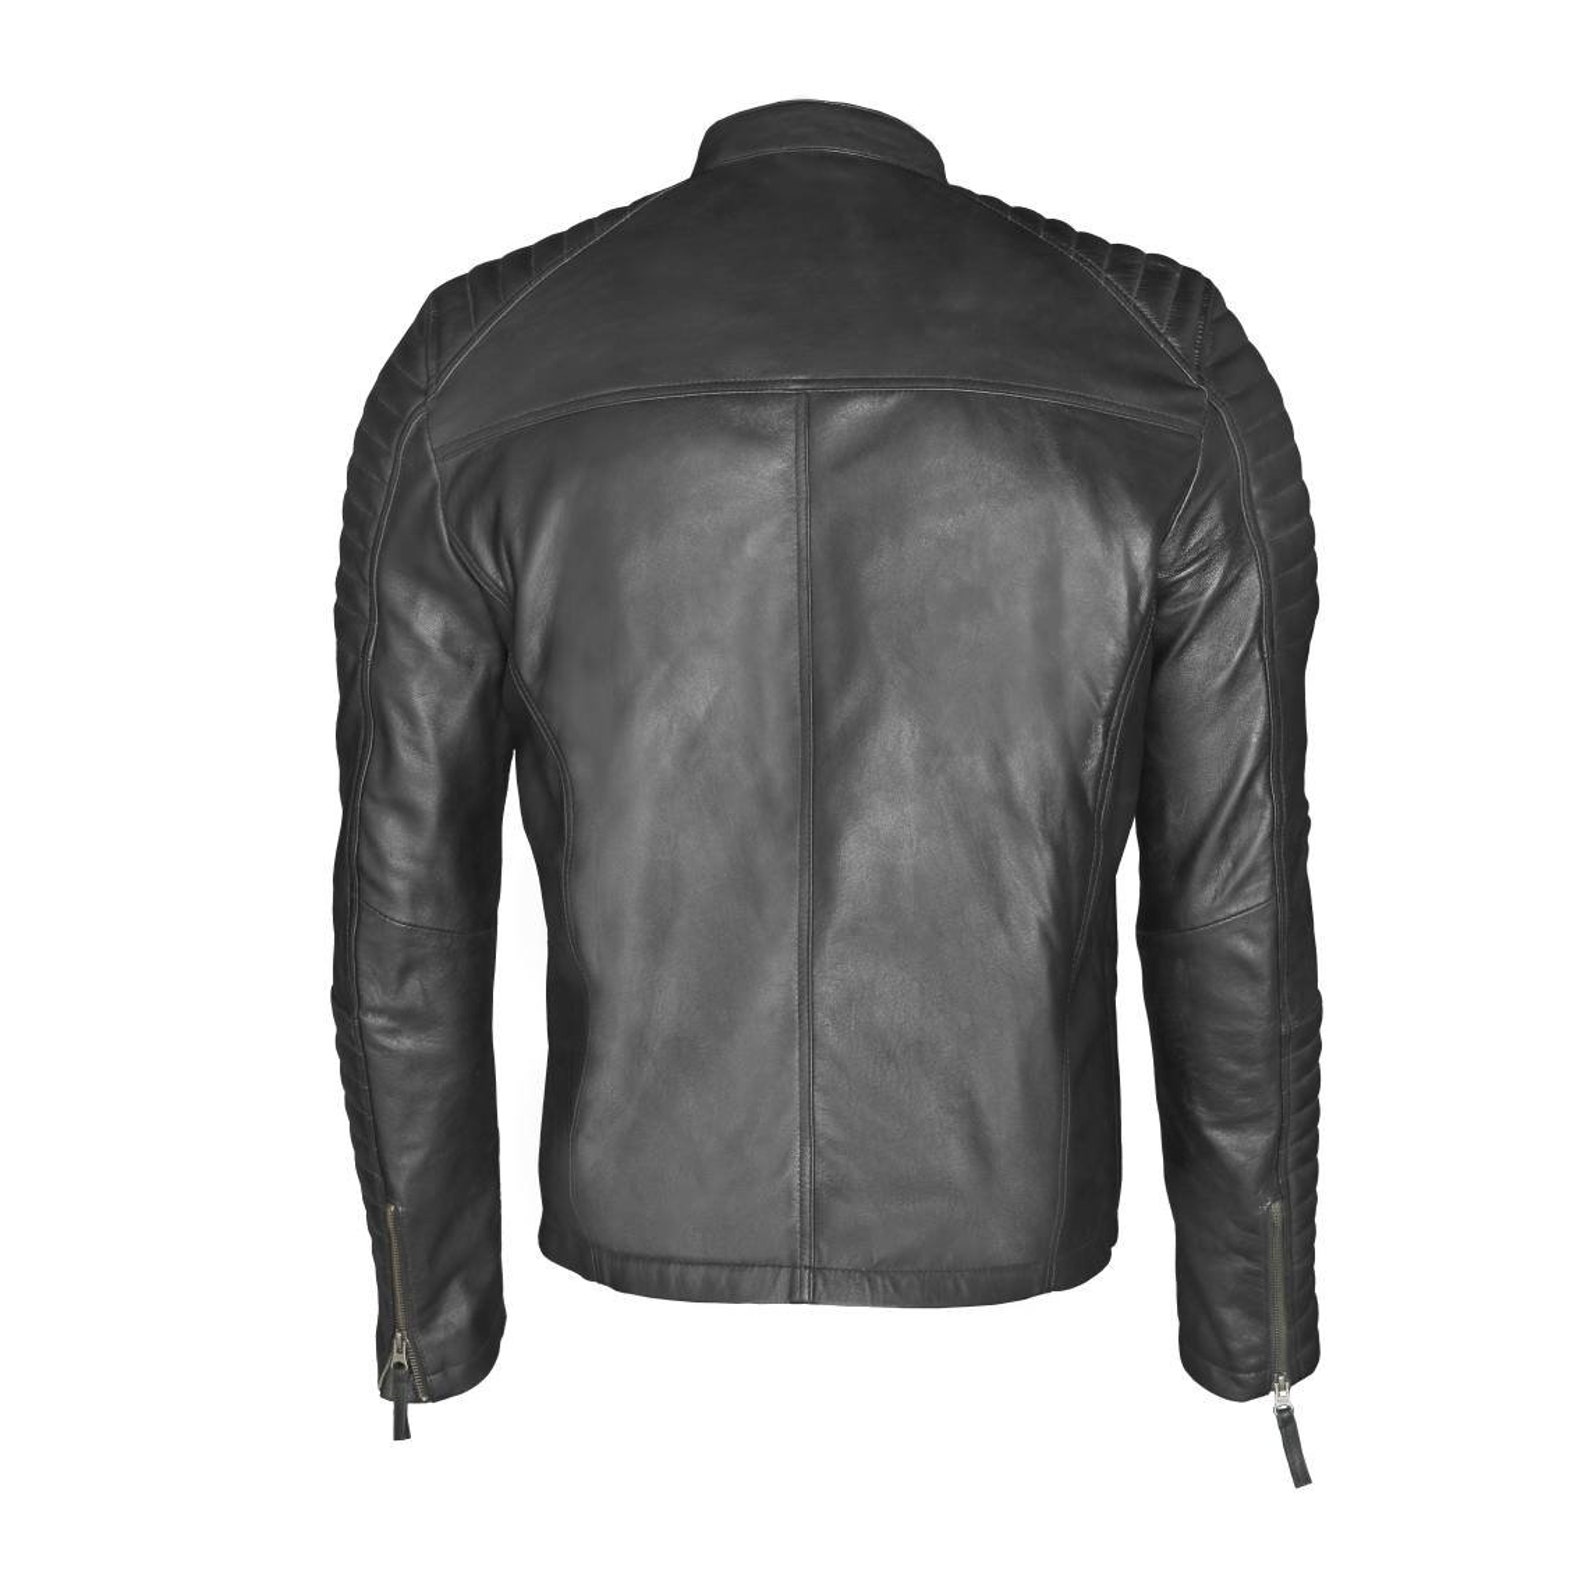 BLACK LEATHER JACKET Men's Leather Jacket Black Biker - Etsy